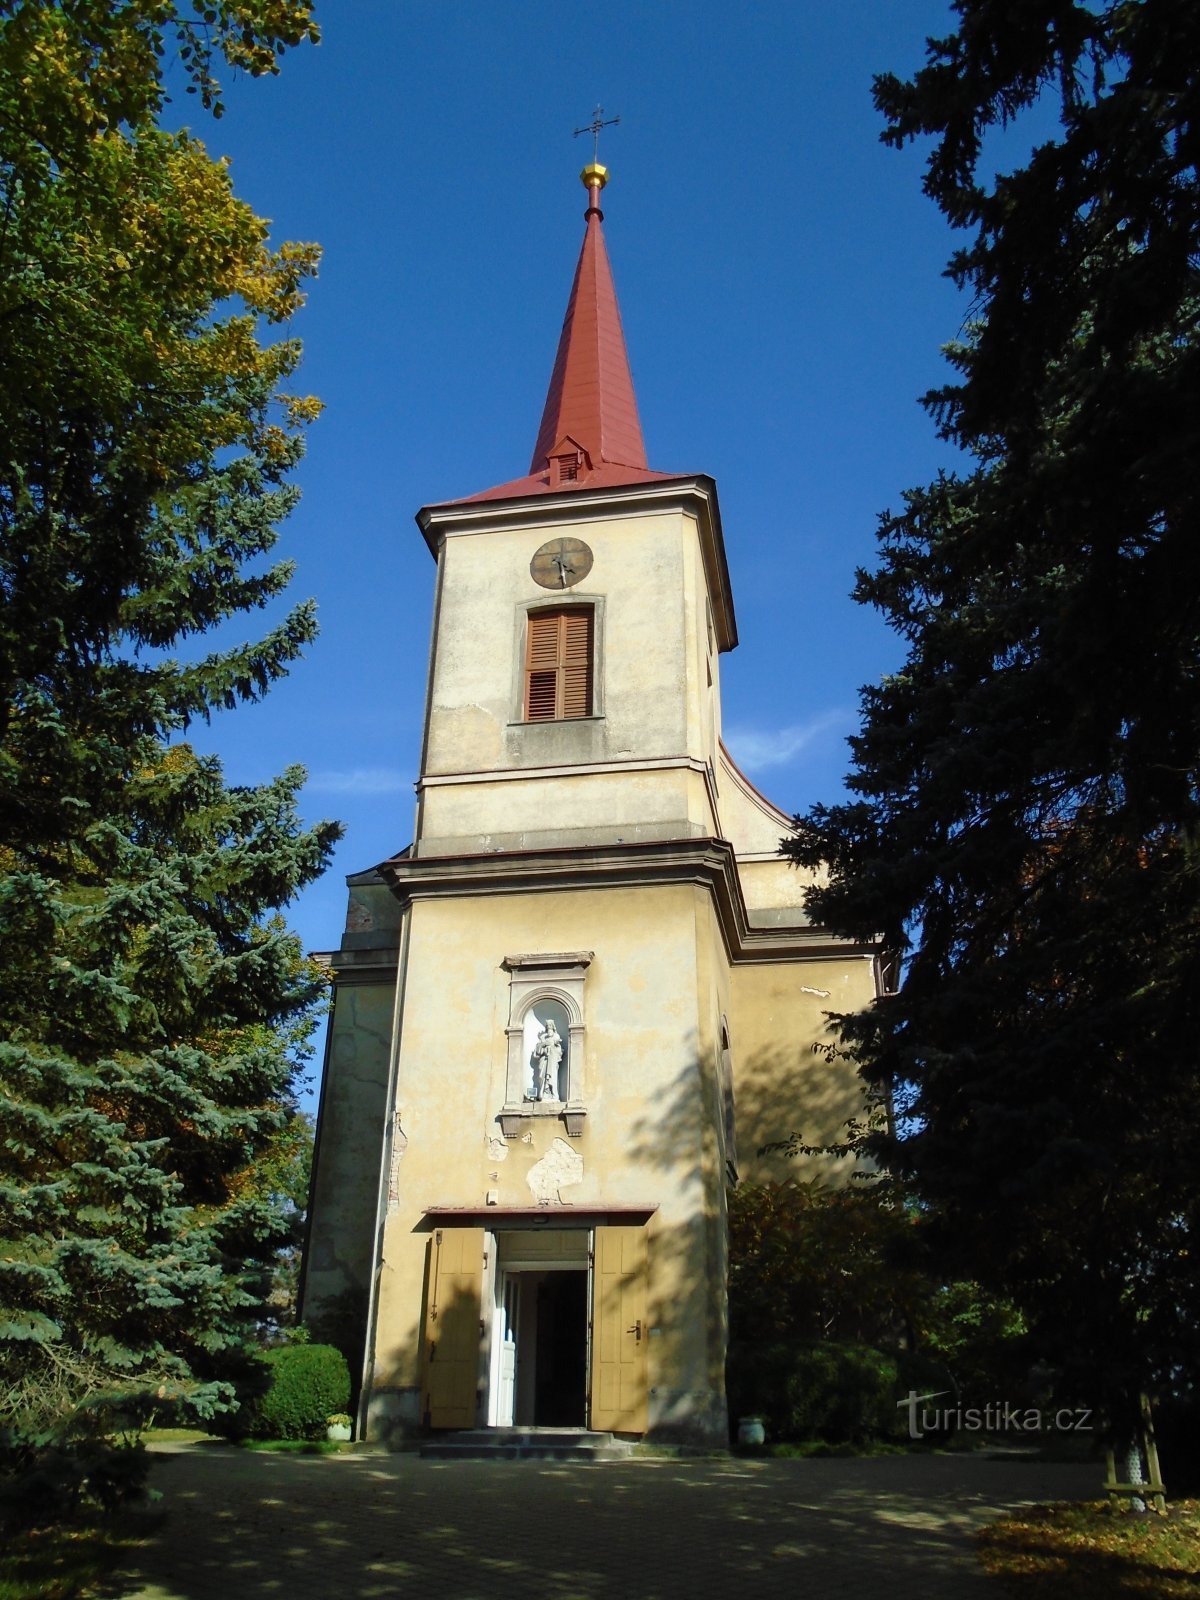 Cerkev Najdba sv. Štefan (Černilov)